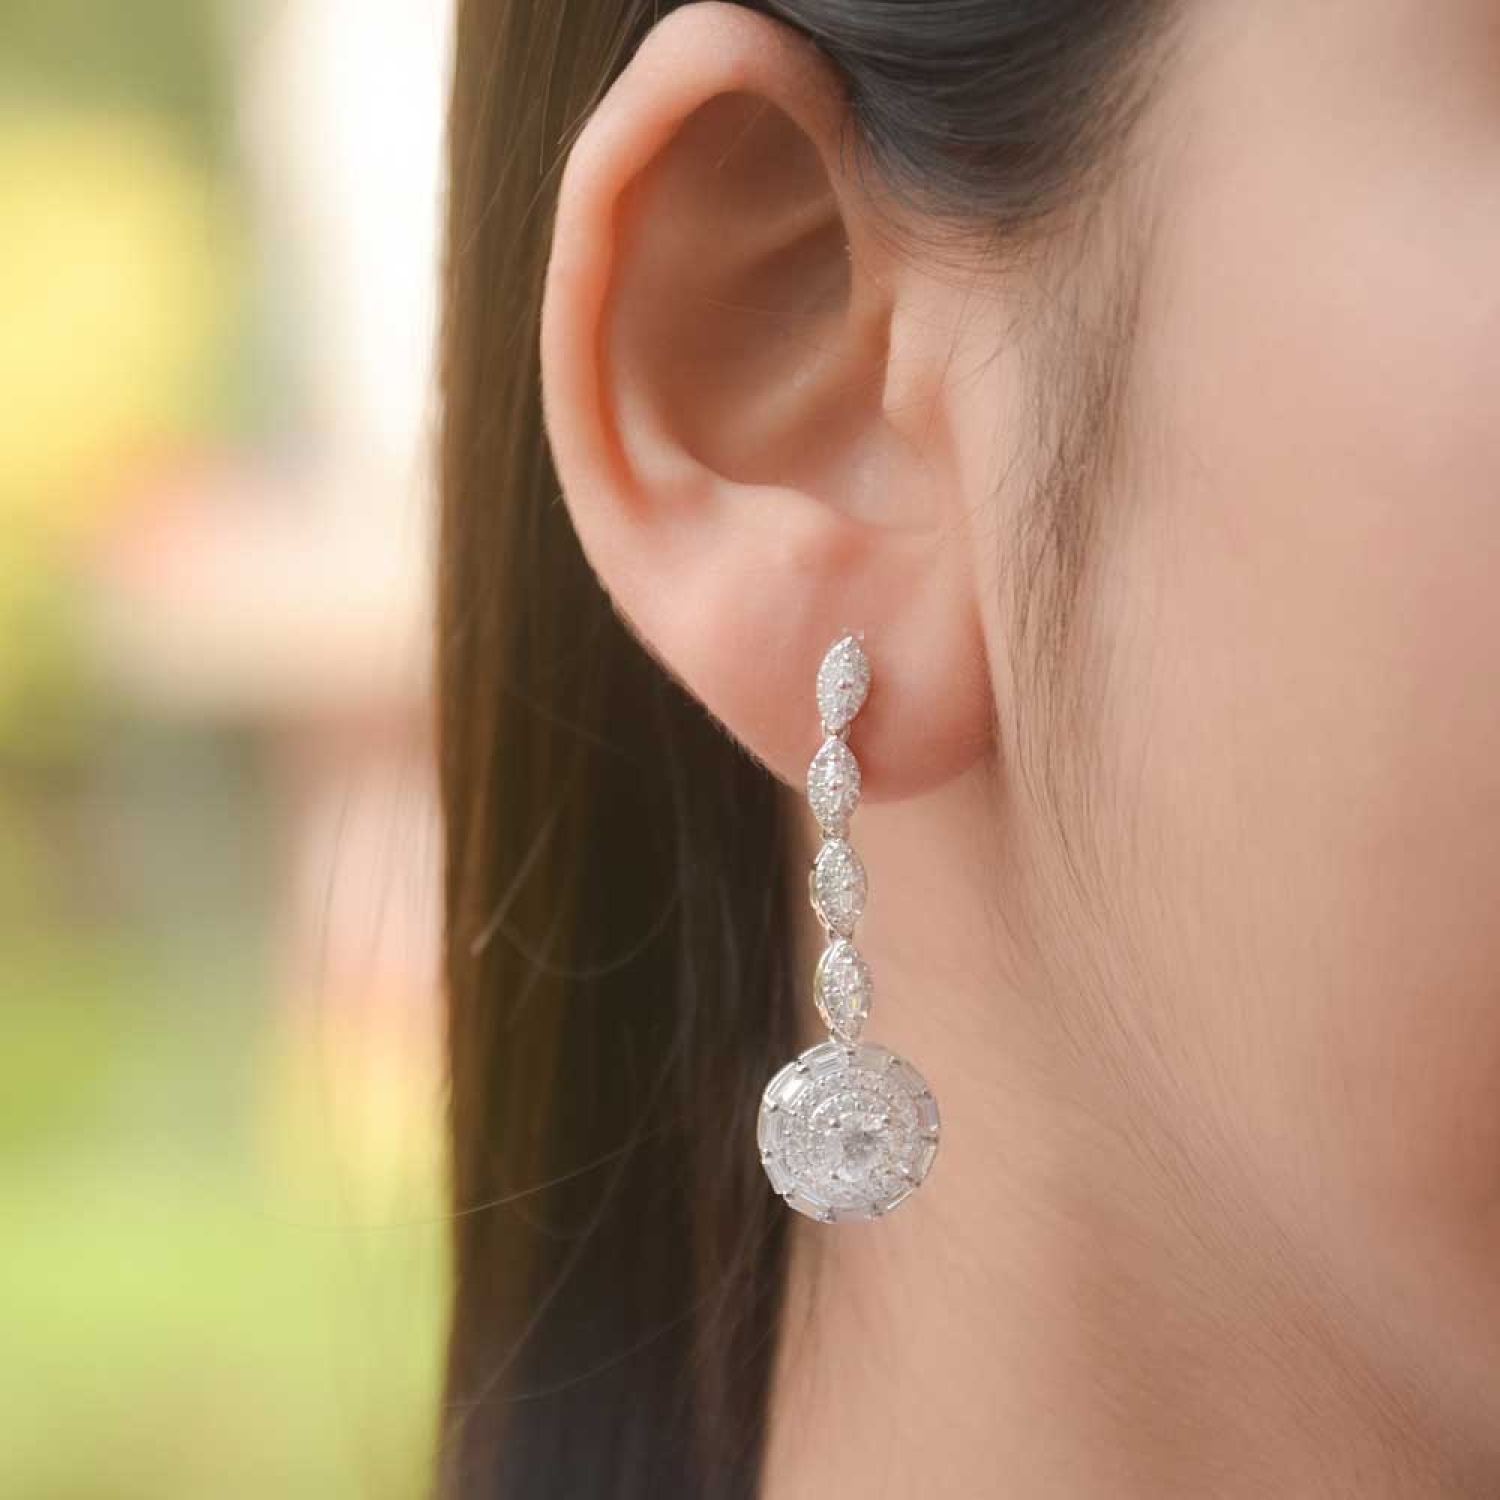 Fallen Star Long Drop Earrings With Ear Cuff Sterling Silver - Etsy | Ear  jewelry, Silver earring cuff, Jewelry lookbook